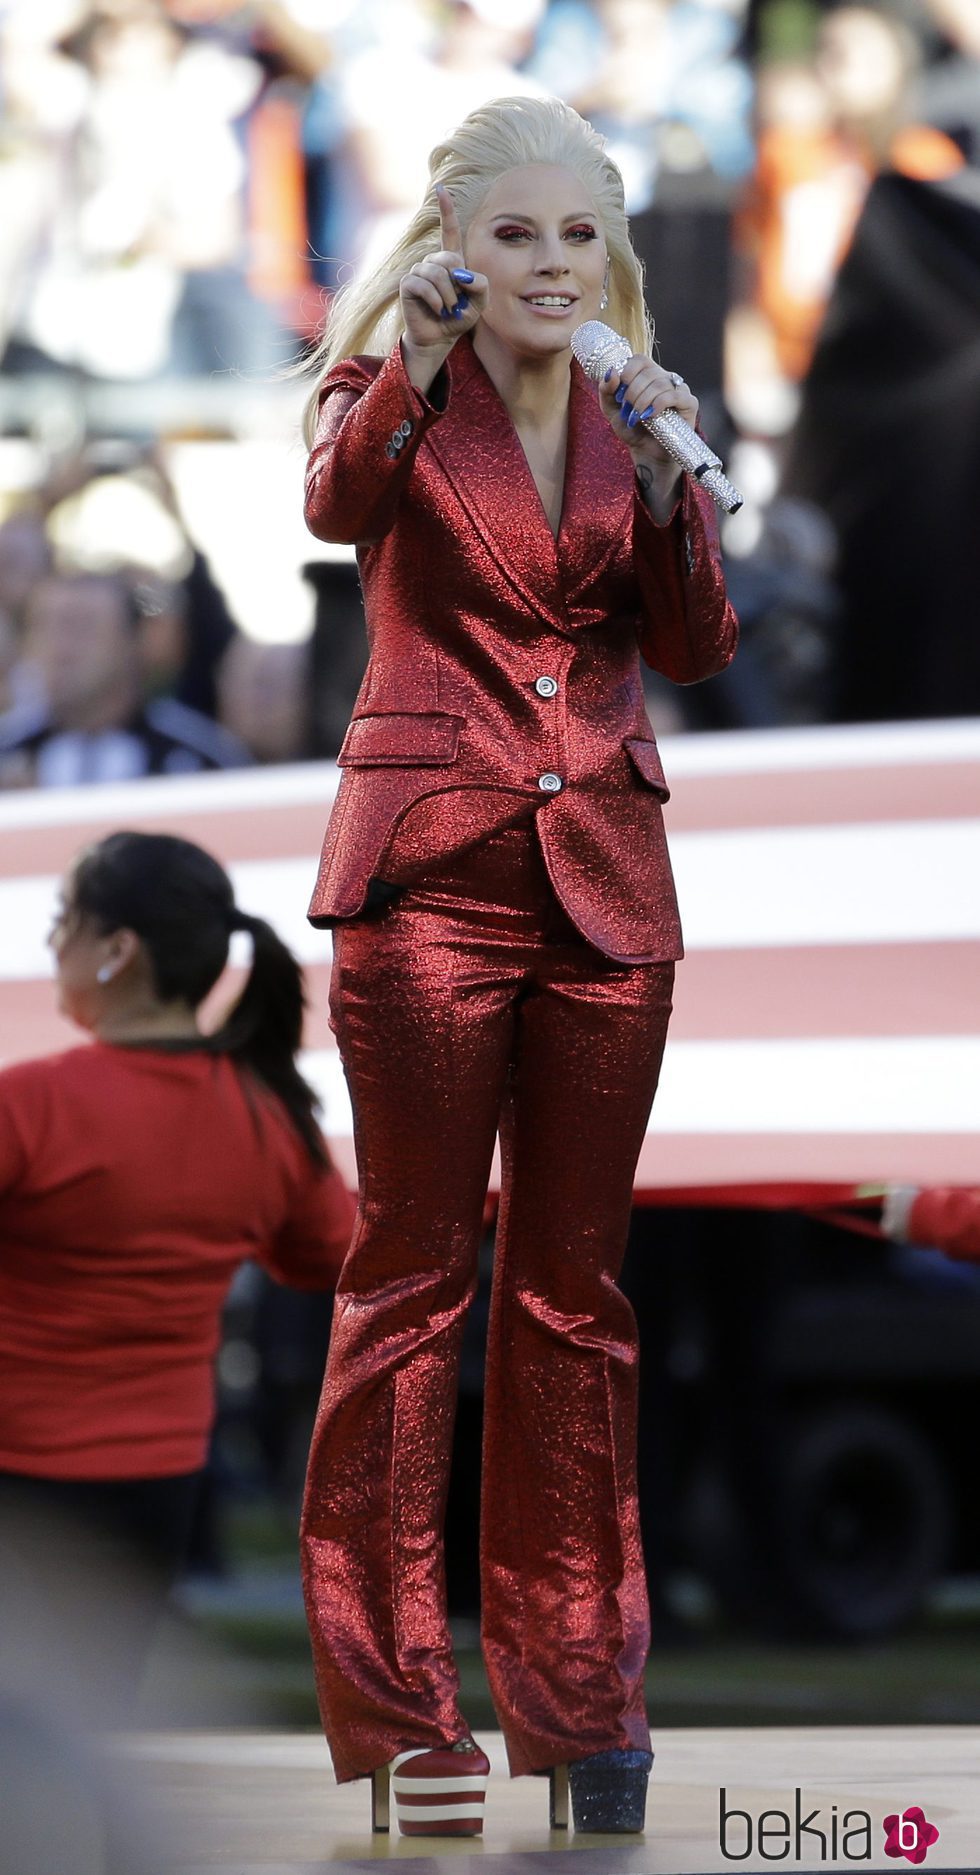 Lady Gaga interpretando el himno americano en la Super Bowl 2016